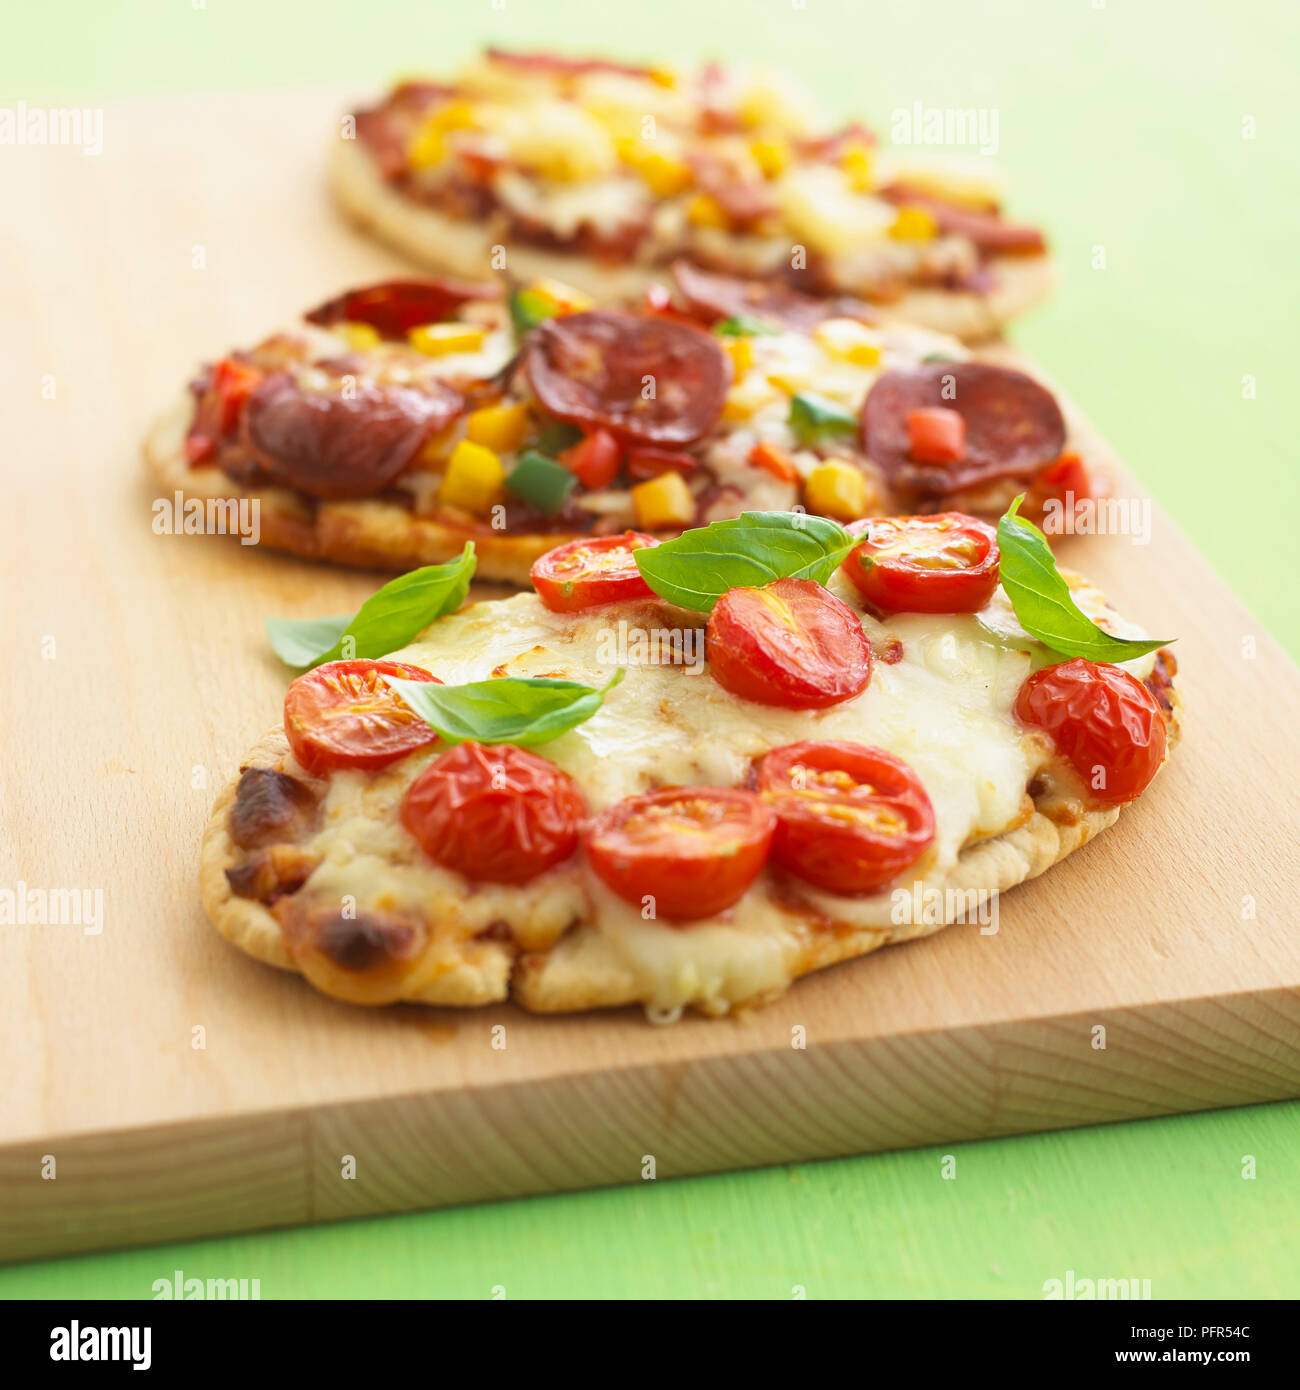 Pitta bread pizzas Stock Photo